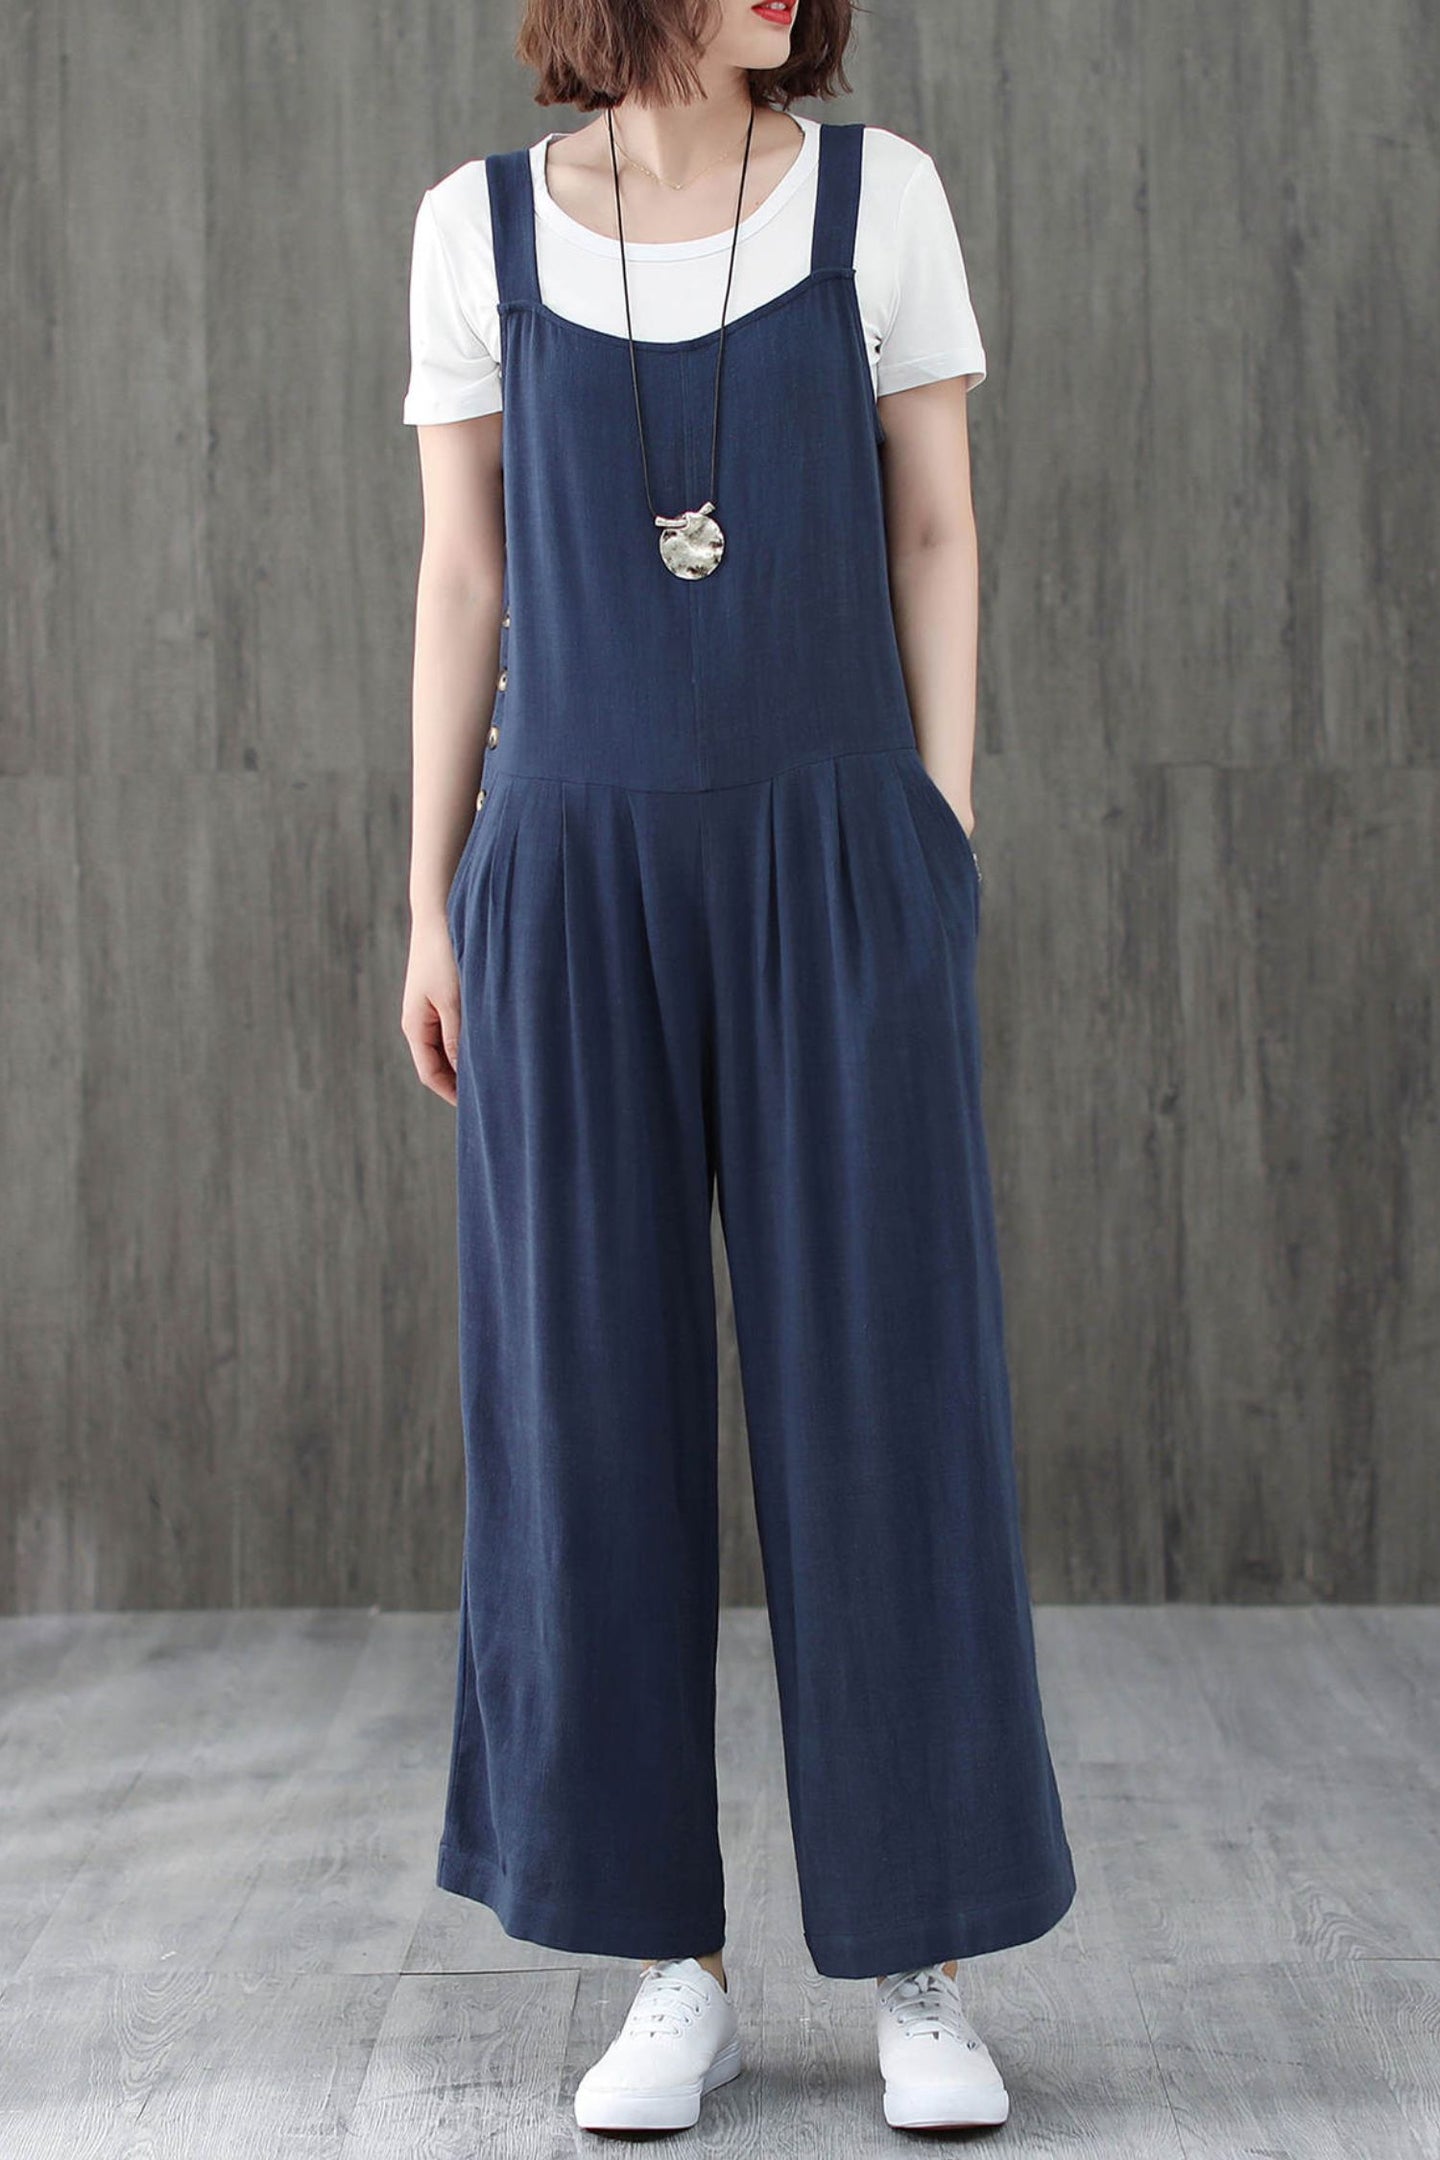 Blue Casual Linen Jumpsuits C1946